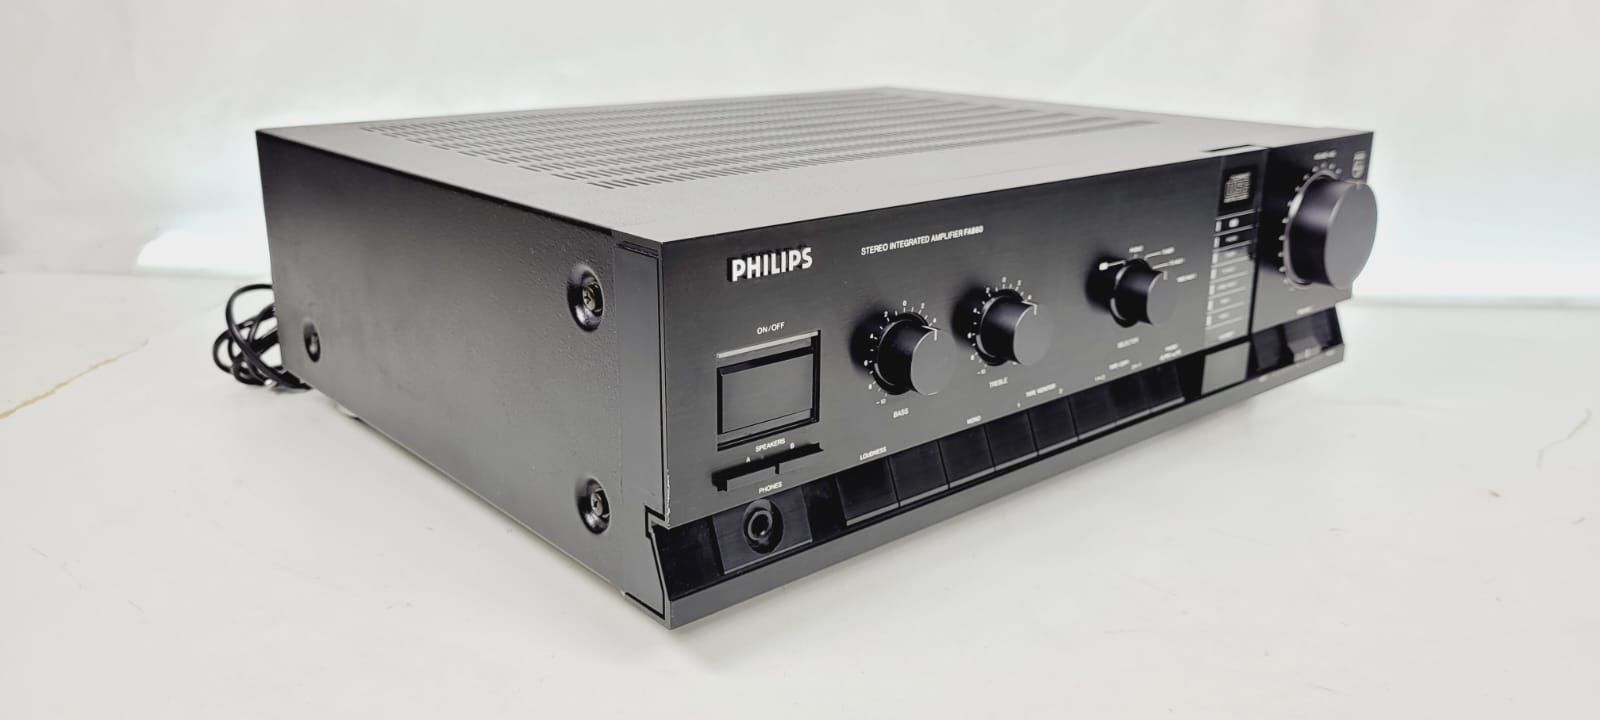 Wzmacniacz Philips FA 860 jak Marantz 86r 2x65W 8ohm